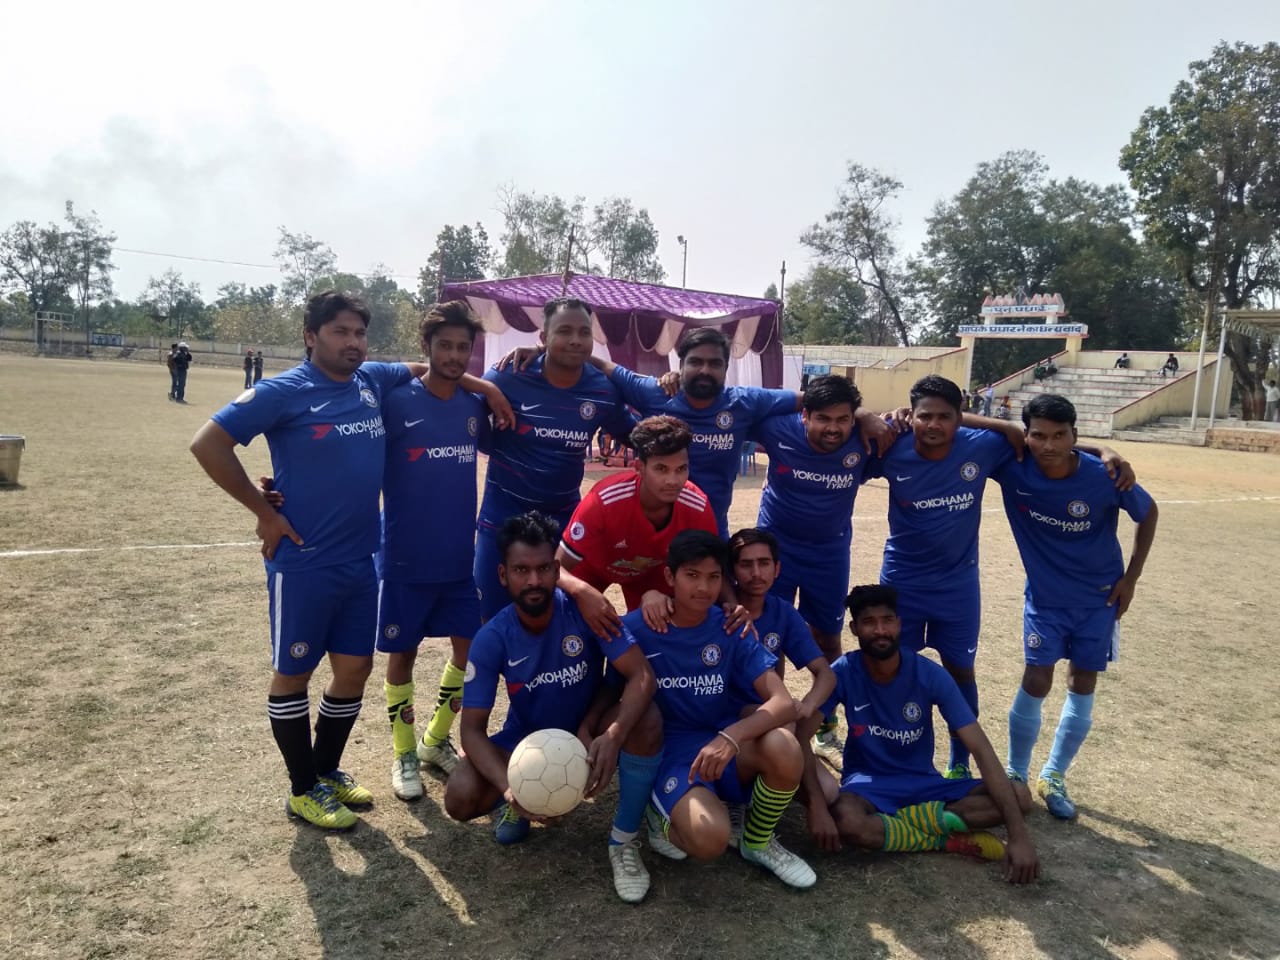 ज्योति क्लब डूंगरिया ने फुटबॉल प्रतियोगिता में जुन्नारदेव आरसी को दो गोल से हराया | New India Times